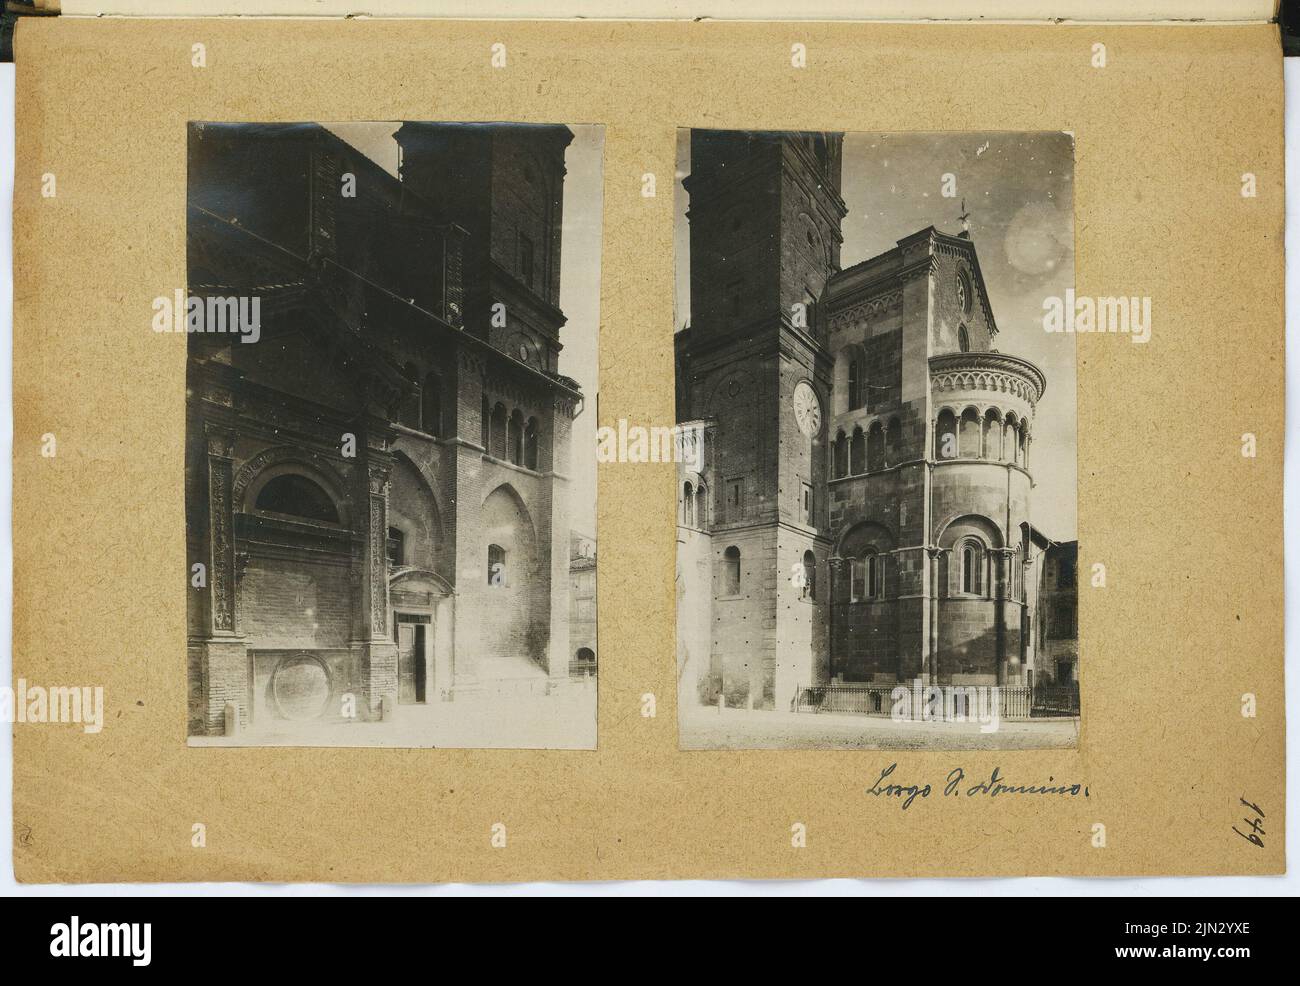 Stiehl otto (1860-1940): Schizzo e album fotografico 4: Chiesa, Borgo San Donnino Foto Stock